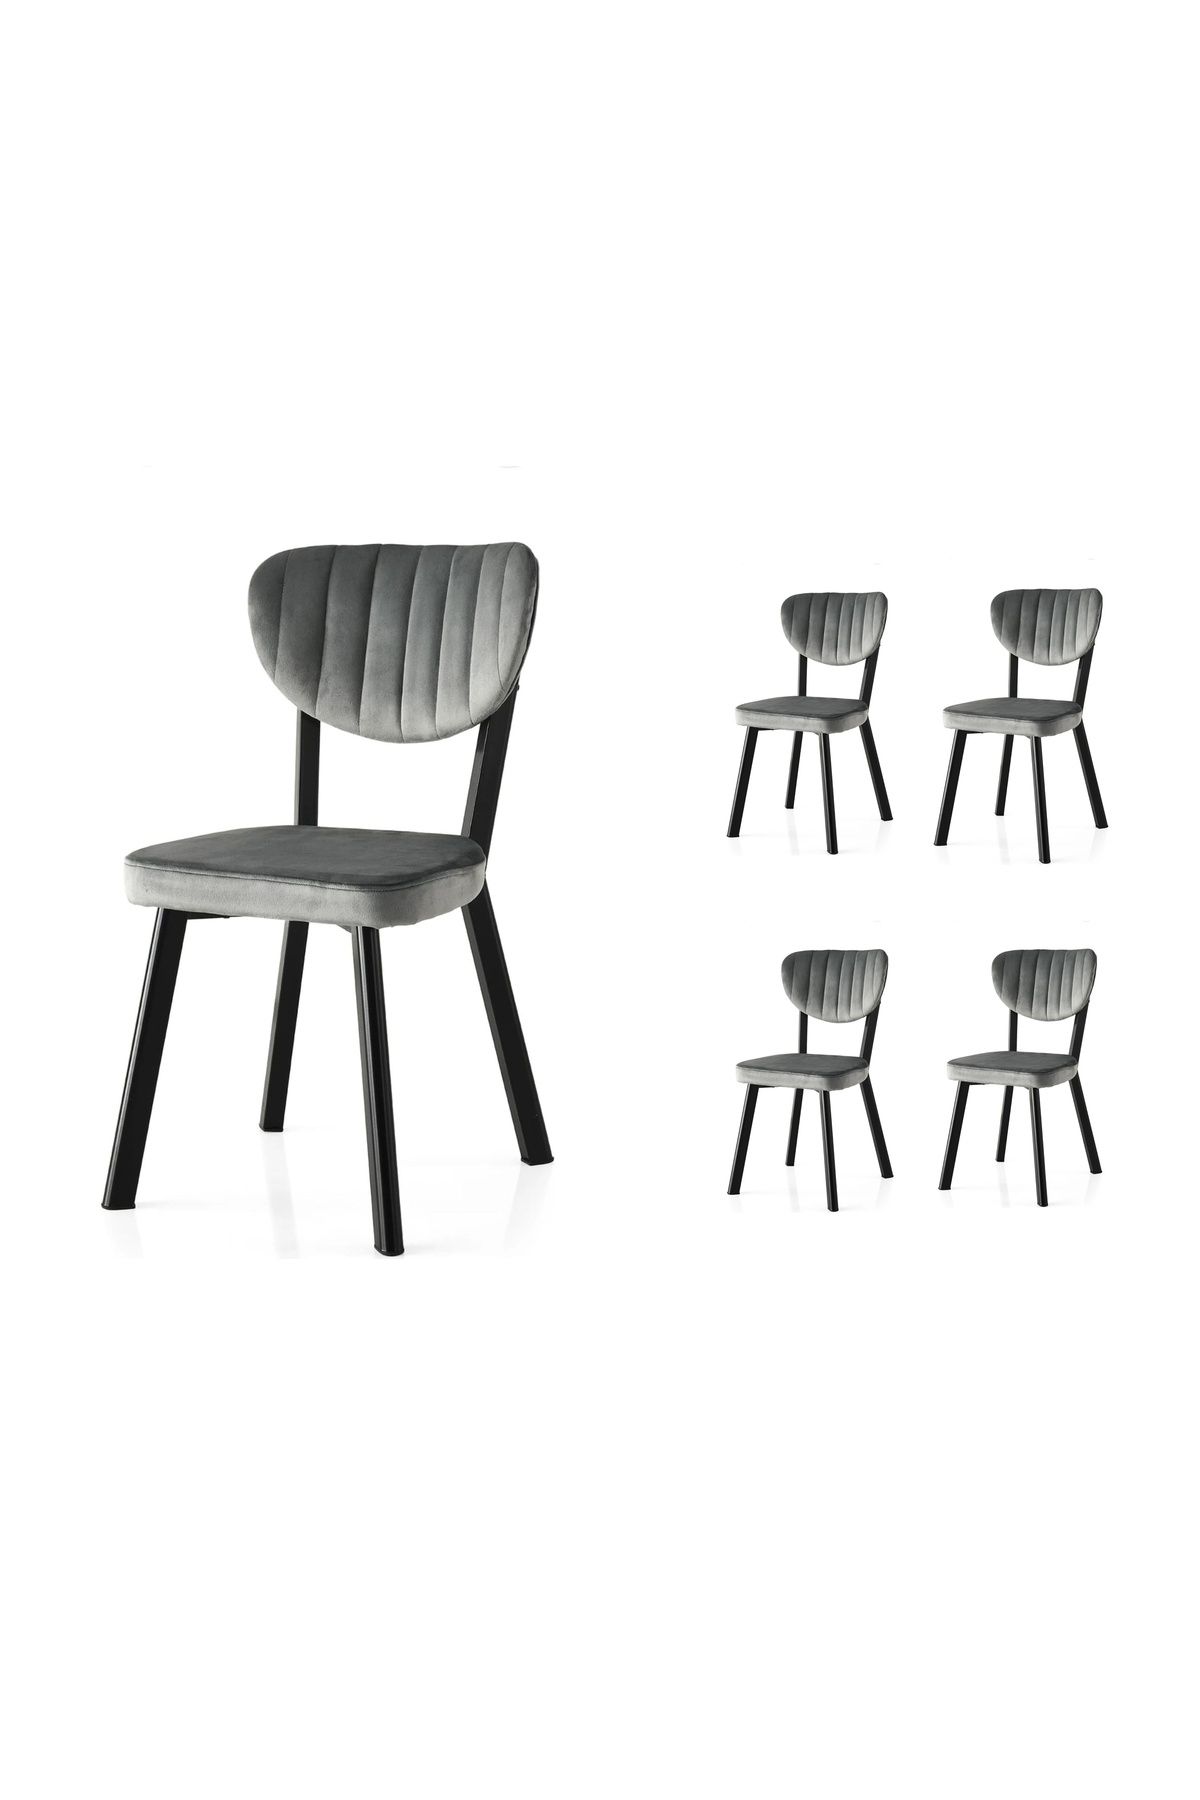 Kaktüs Avm 4'lü Mutfak Sandalyesi Salon Sandalyesi Yemek Sandalyesi Cafe Restaurant Sandalyesi Papel Sandalye